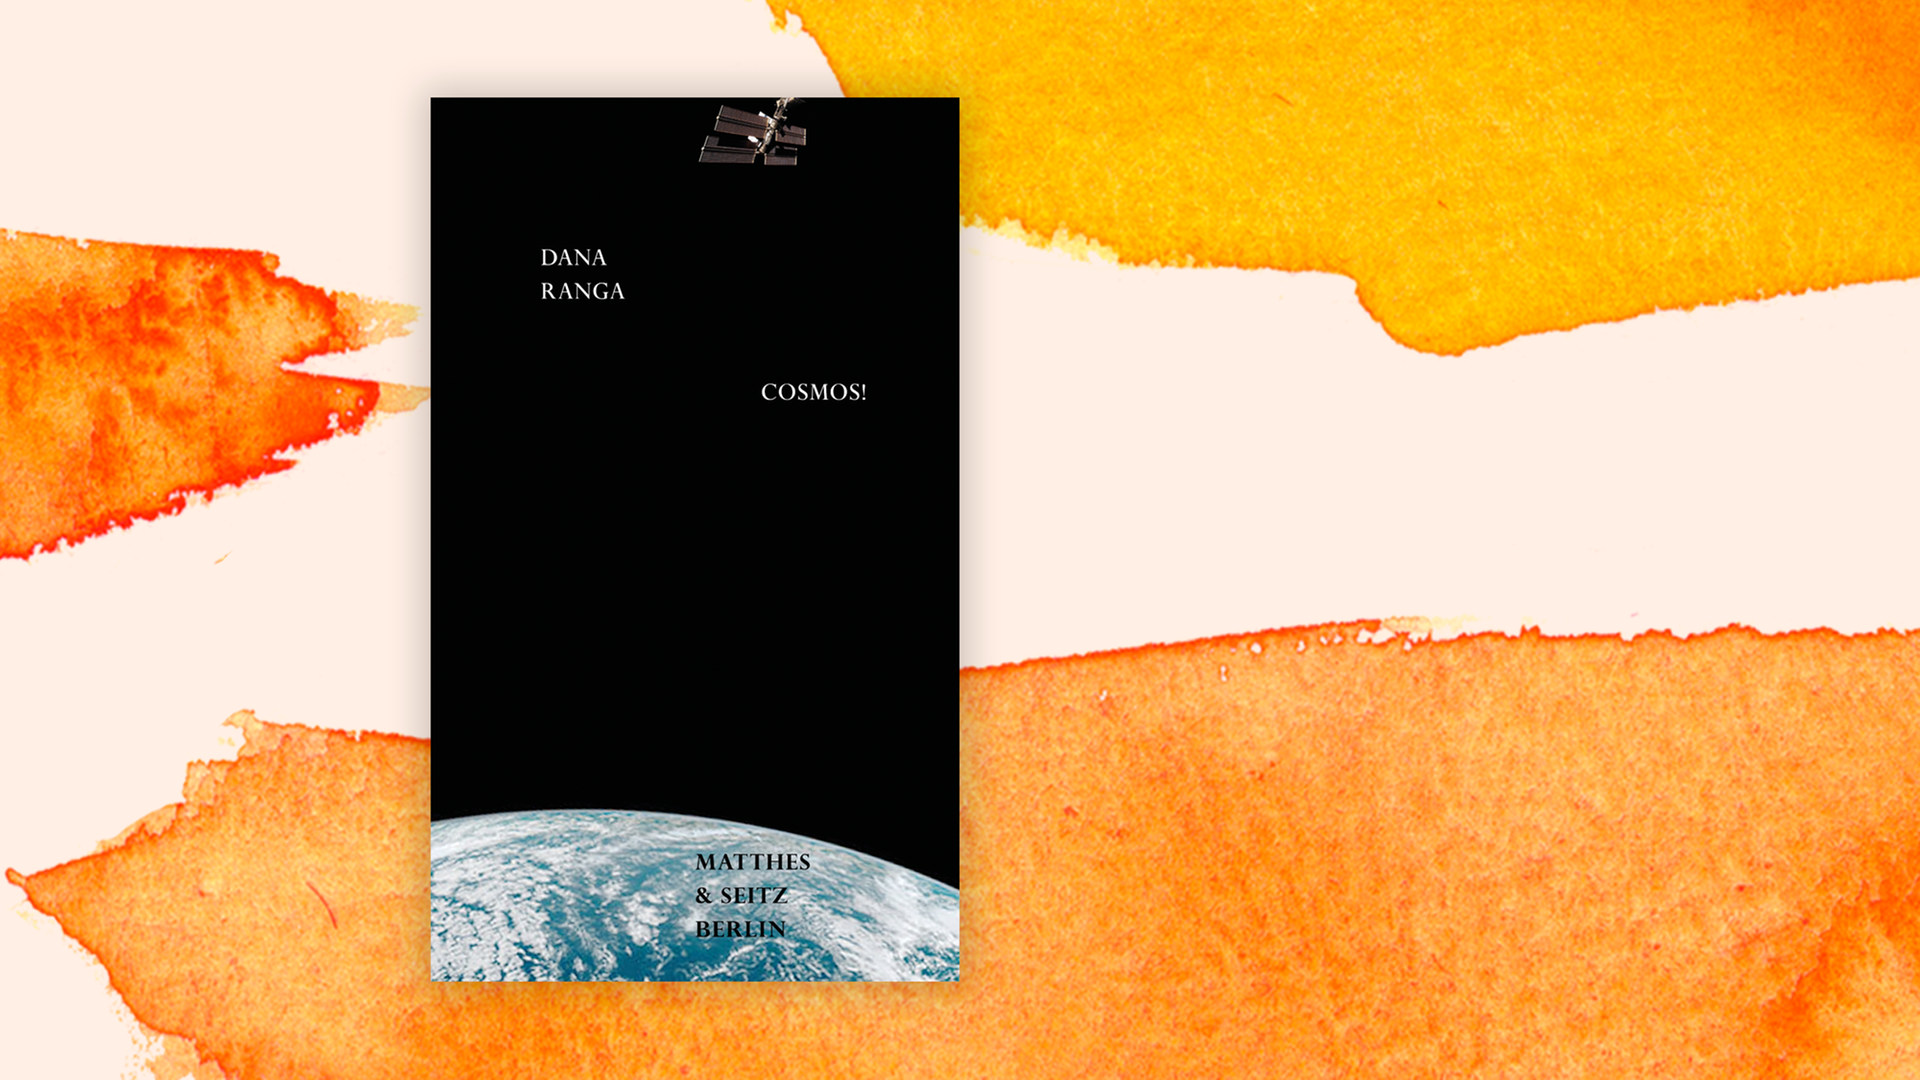 Zu sehen ist das Cover des Buches "Cosmos!" von Dana Ranga.